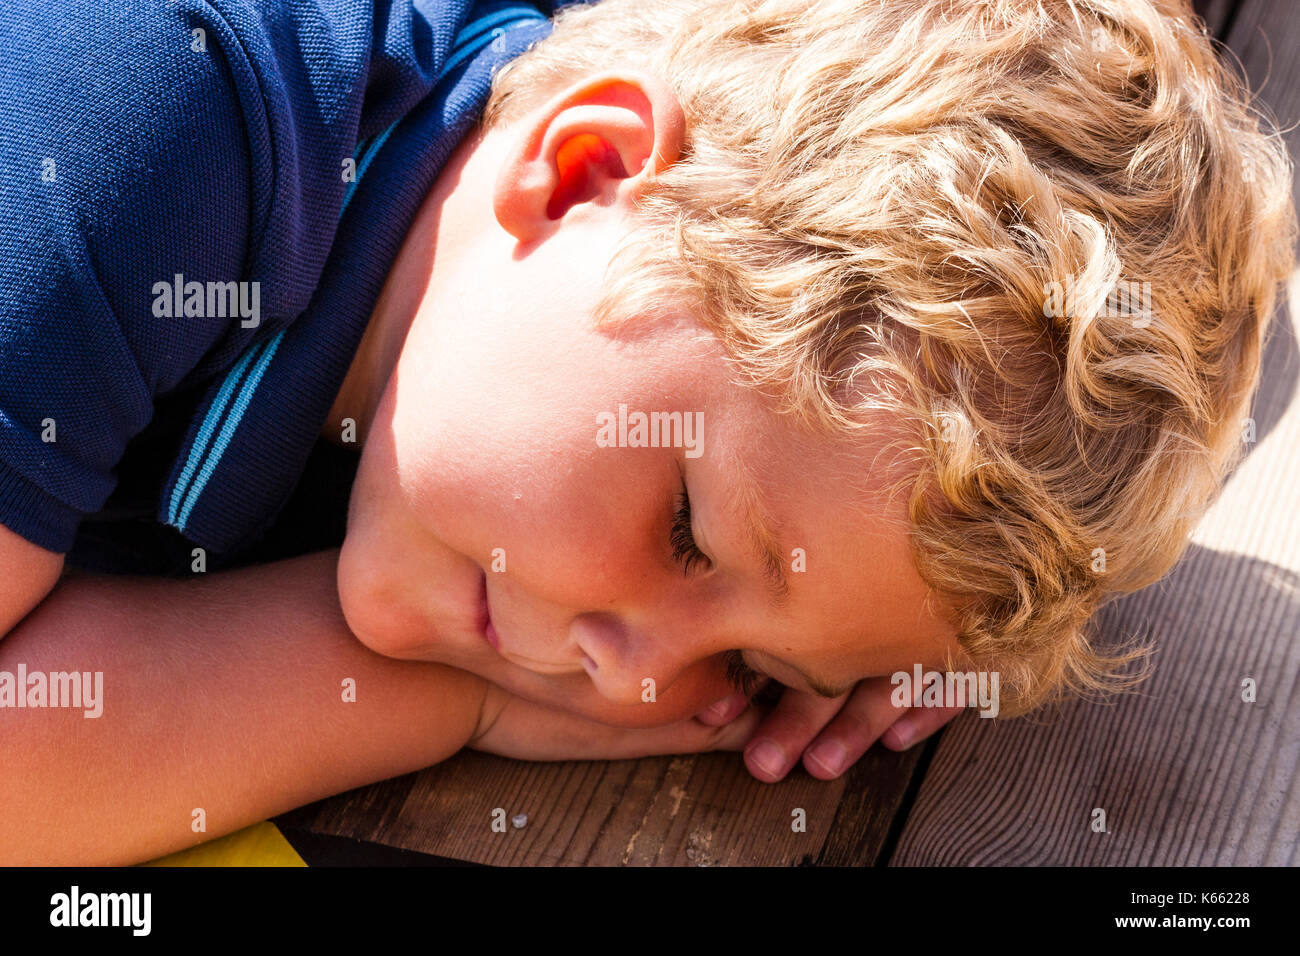 Kind, kleine blonde lockige schwarzhaarige Junge, in der Nähe des Gesichtes, das so tut, schlafend, den Kopf auf den Händen ruht während der Verlegung auf die Holzterrasse. Stockfoto